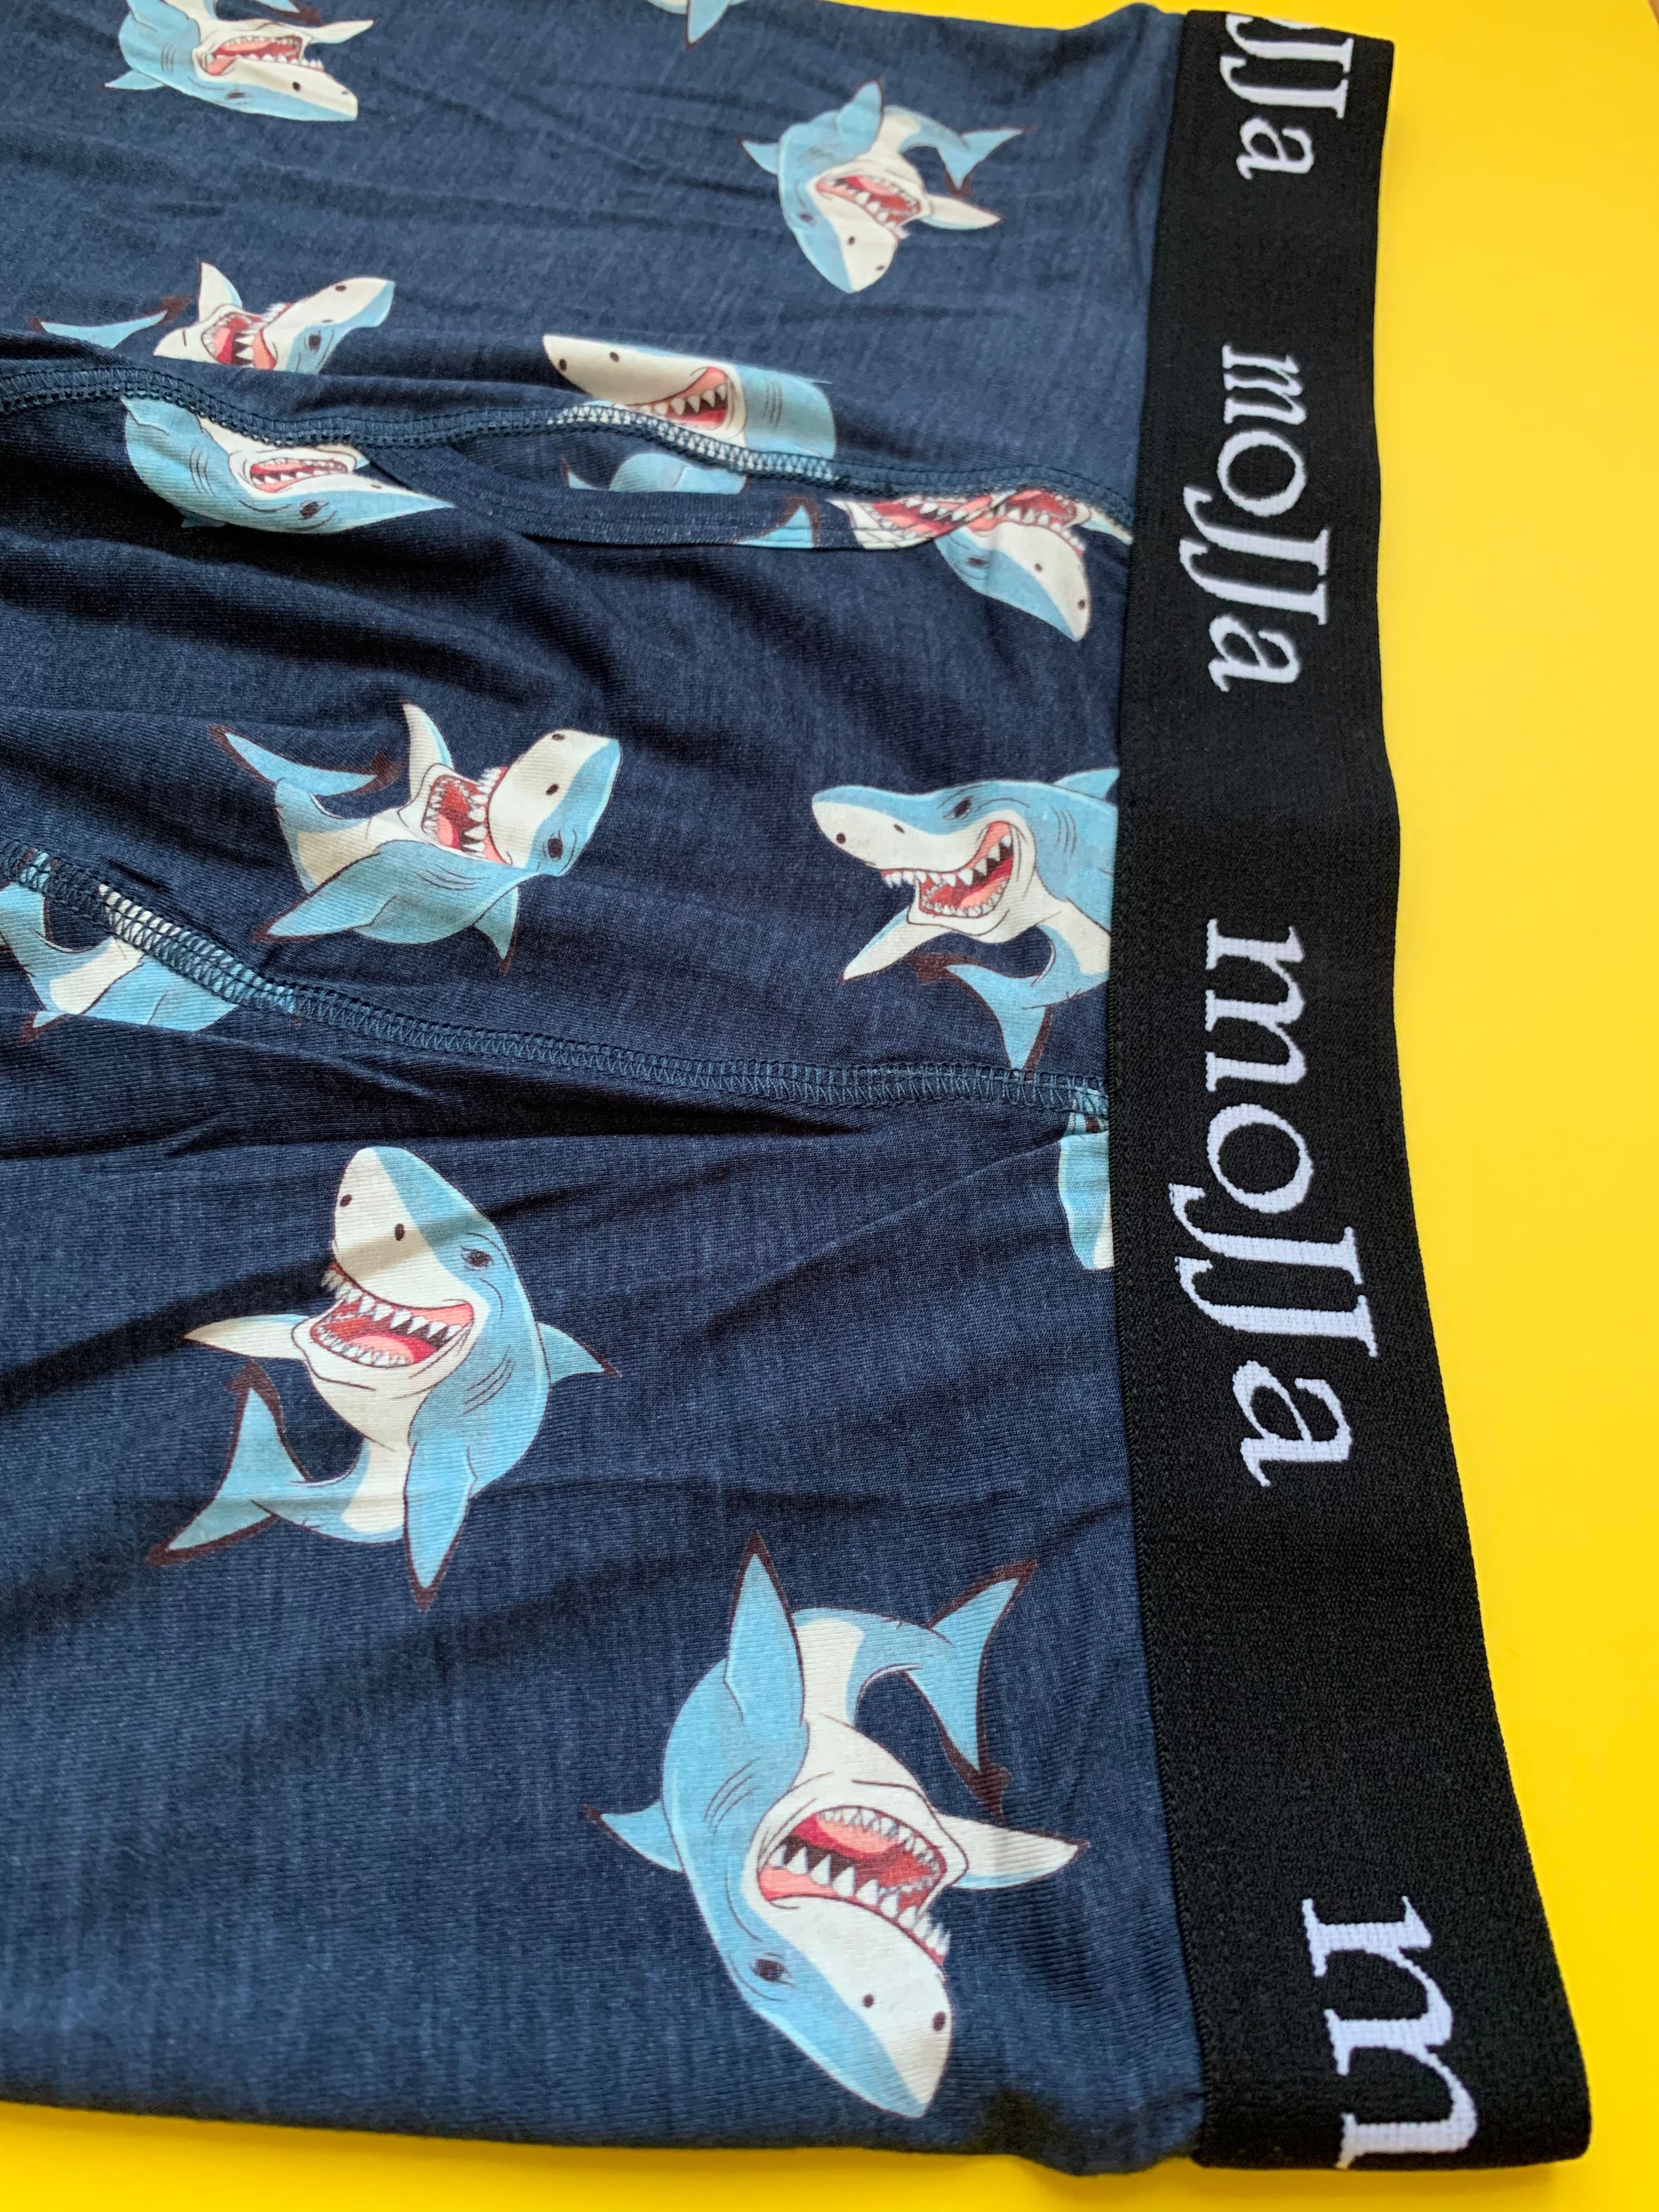 Shark Boxer Briefs Underwear